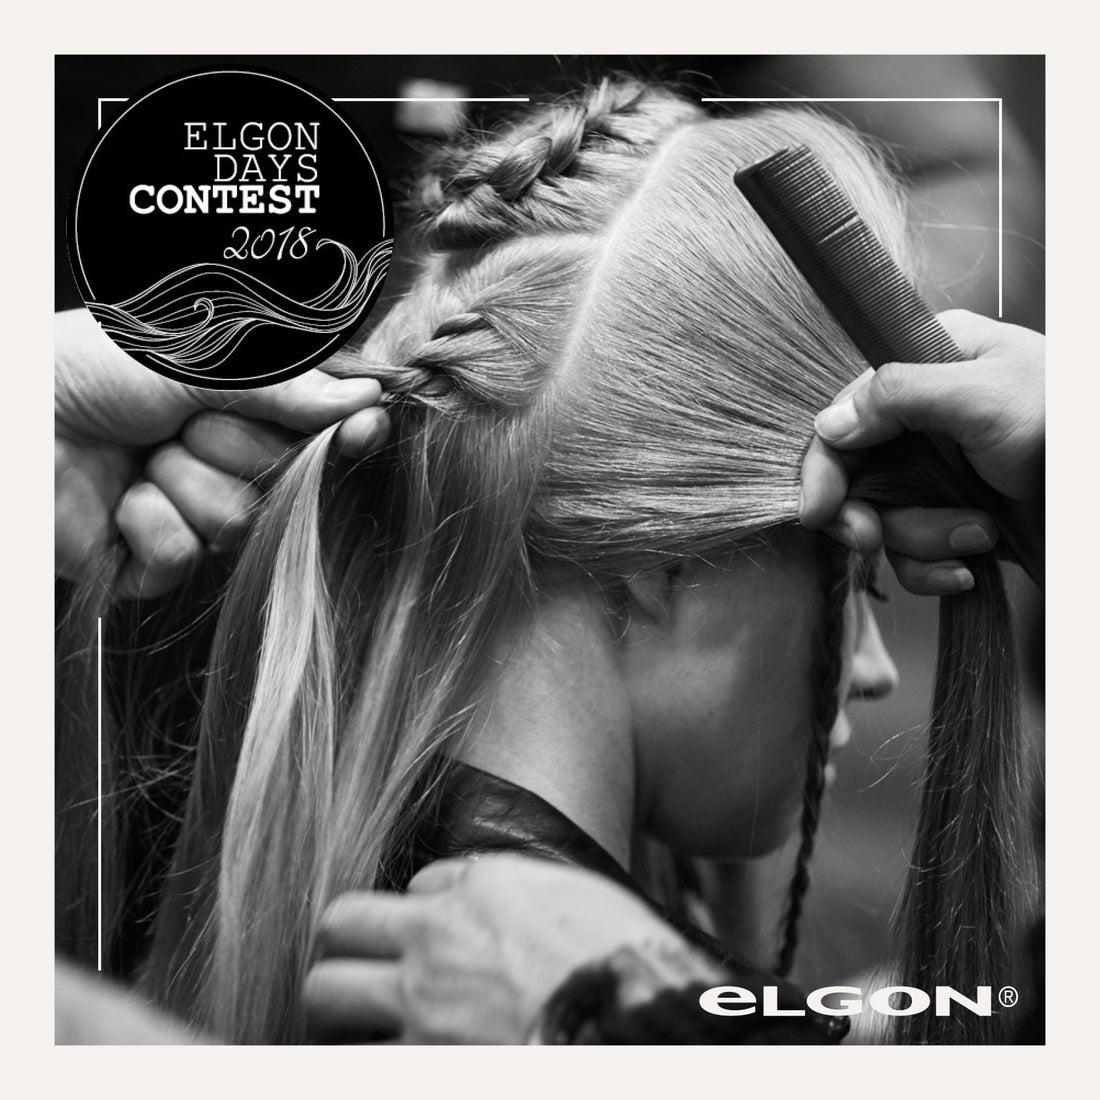 Elgon Days Contest: ecco i vincitori del concorso Elgon dedicato ai parrucchieri di tutto il mondo